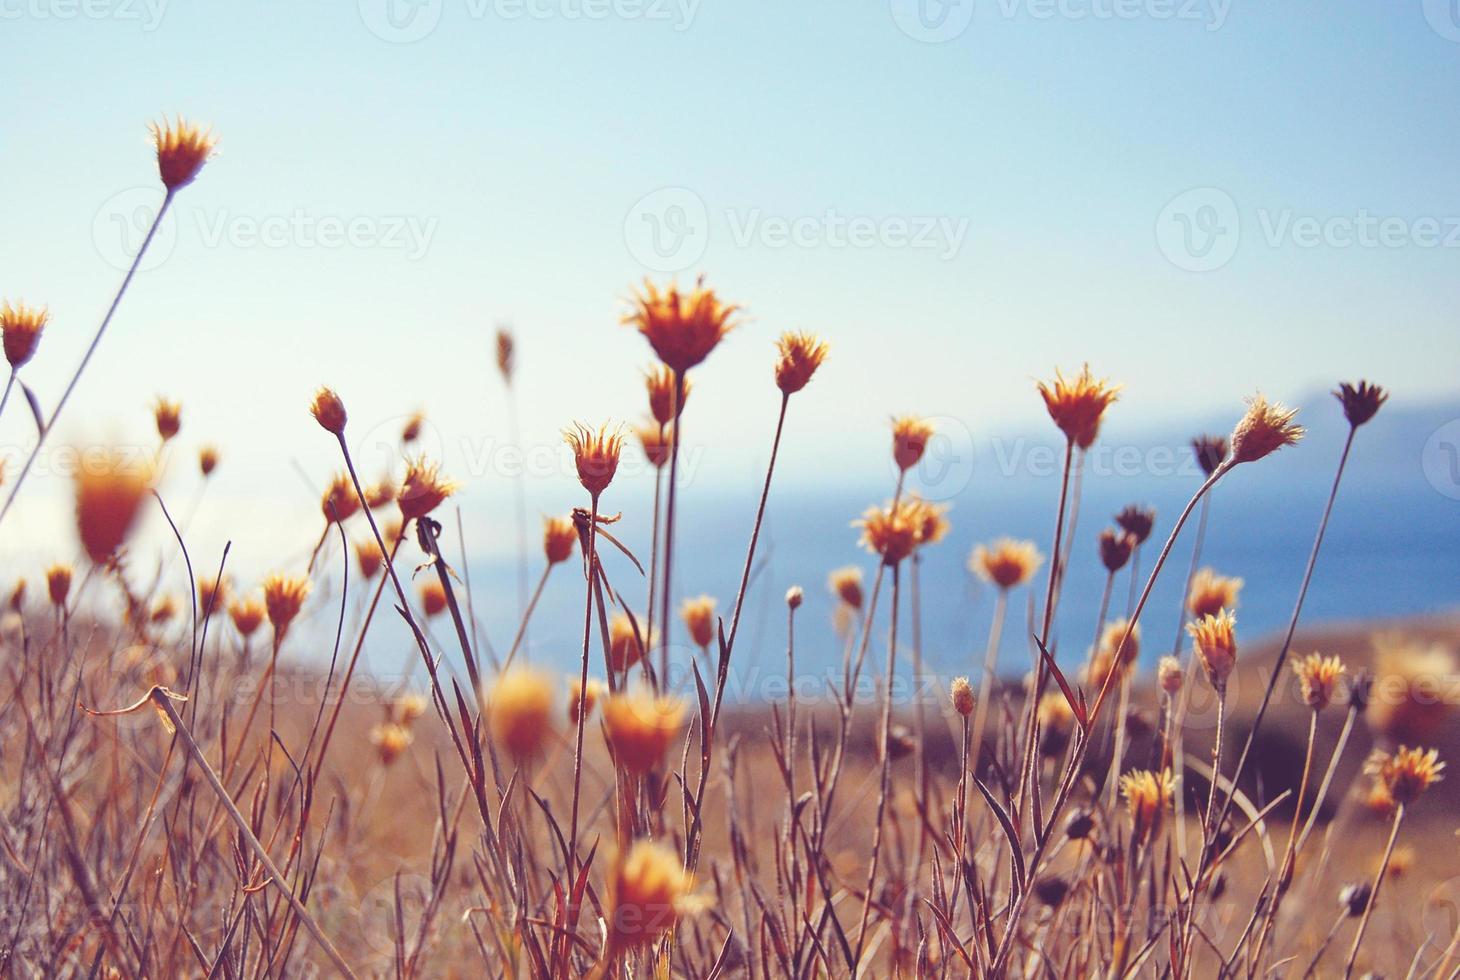 torr blommor och örter fält mot blå hav och himmel bakgrund foto